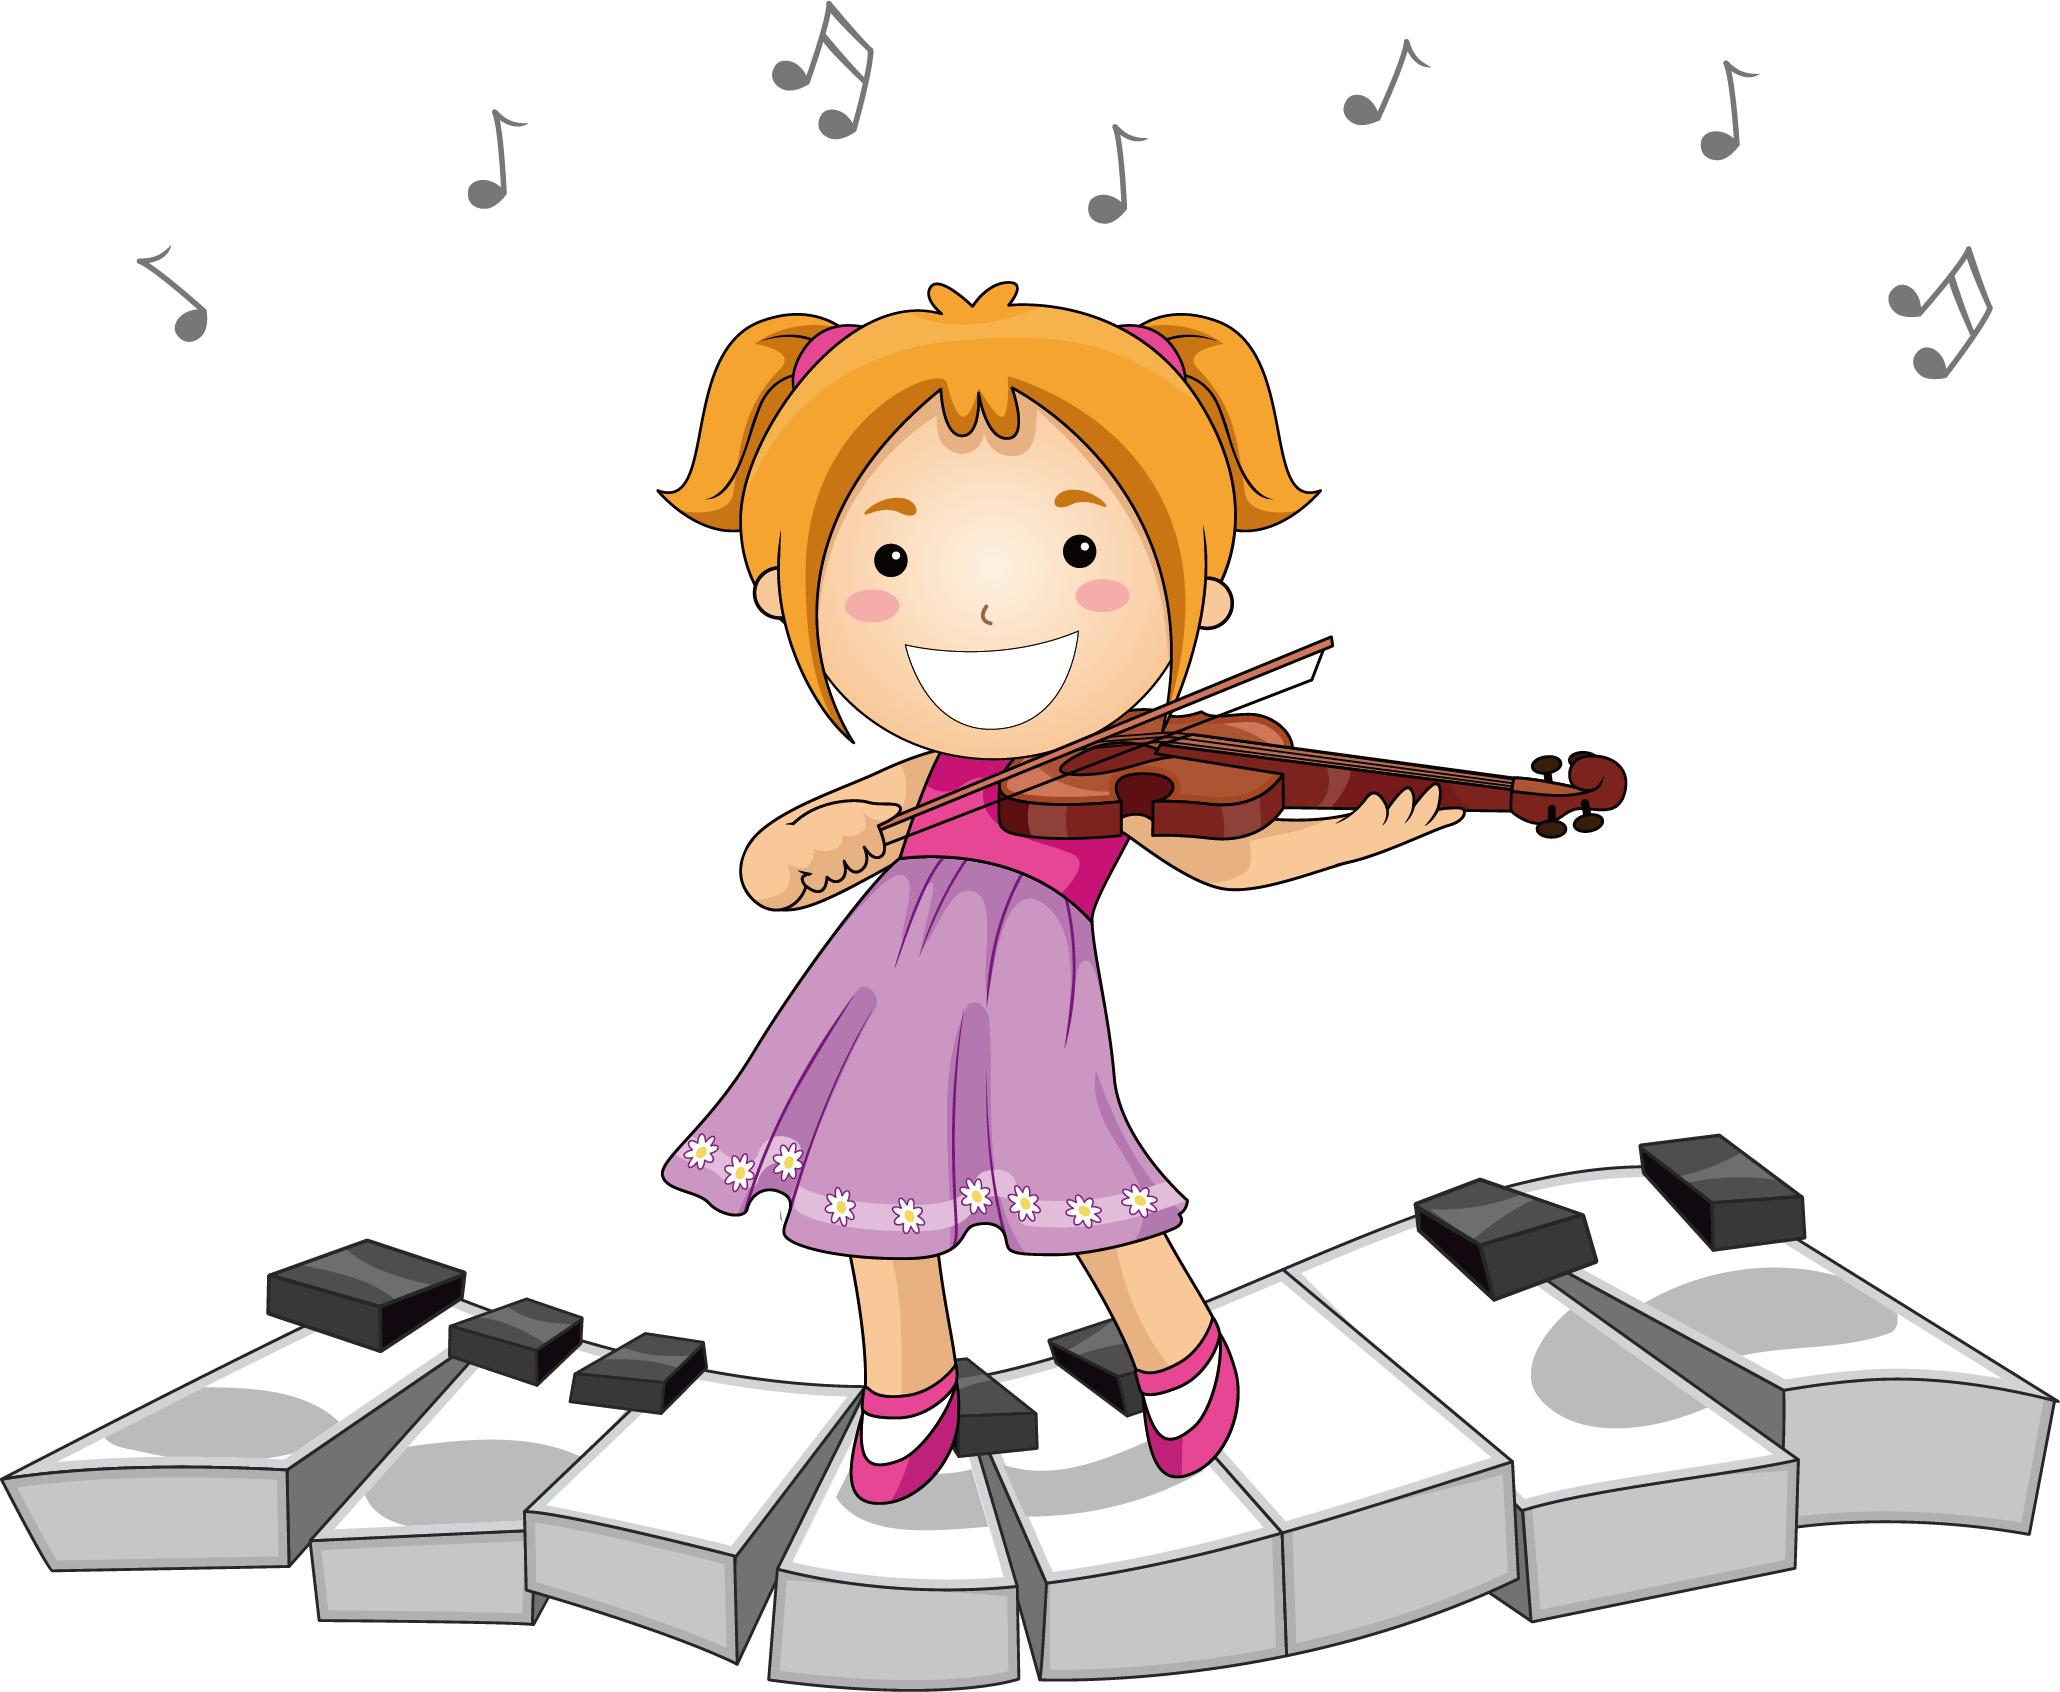 Я пою плюс. Музыкальные инструменты для детей. Музыкальный рисунок для детей. Мультяшные музыканты. Девочка с музыкальным инструментом.